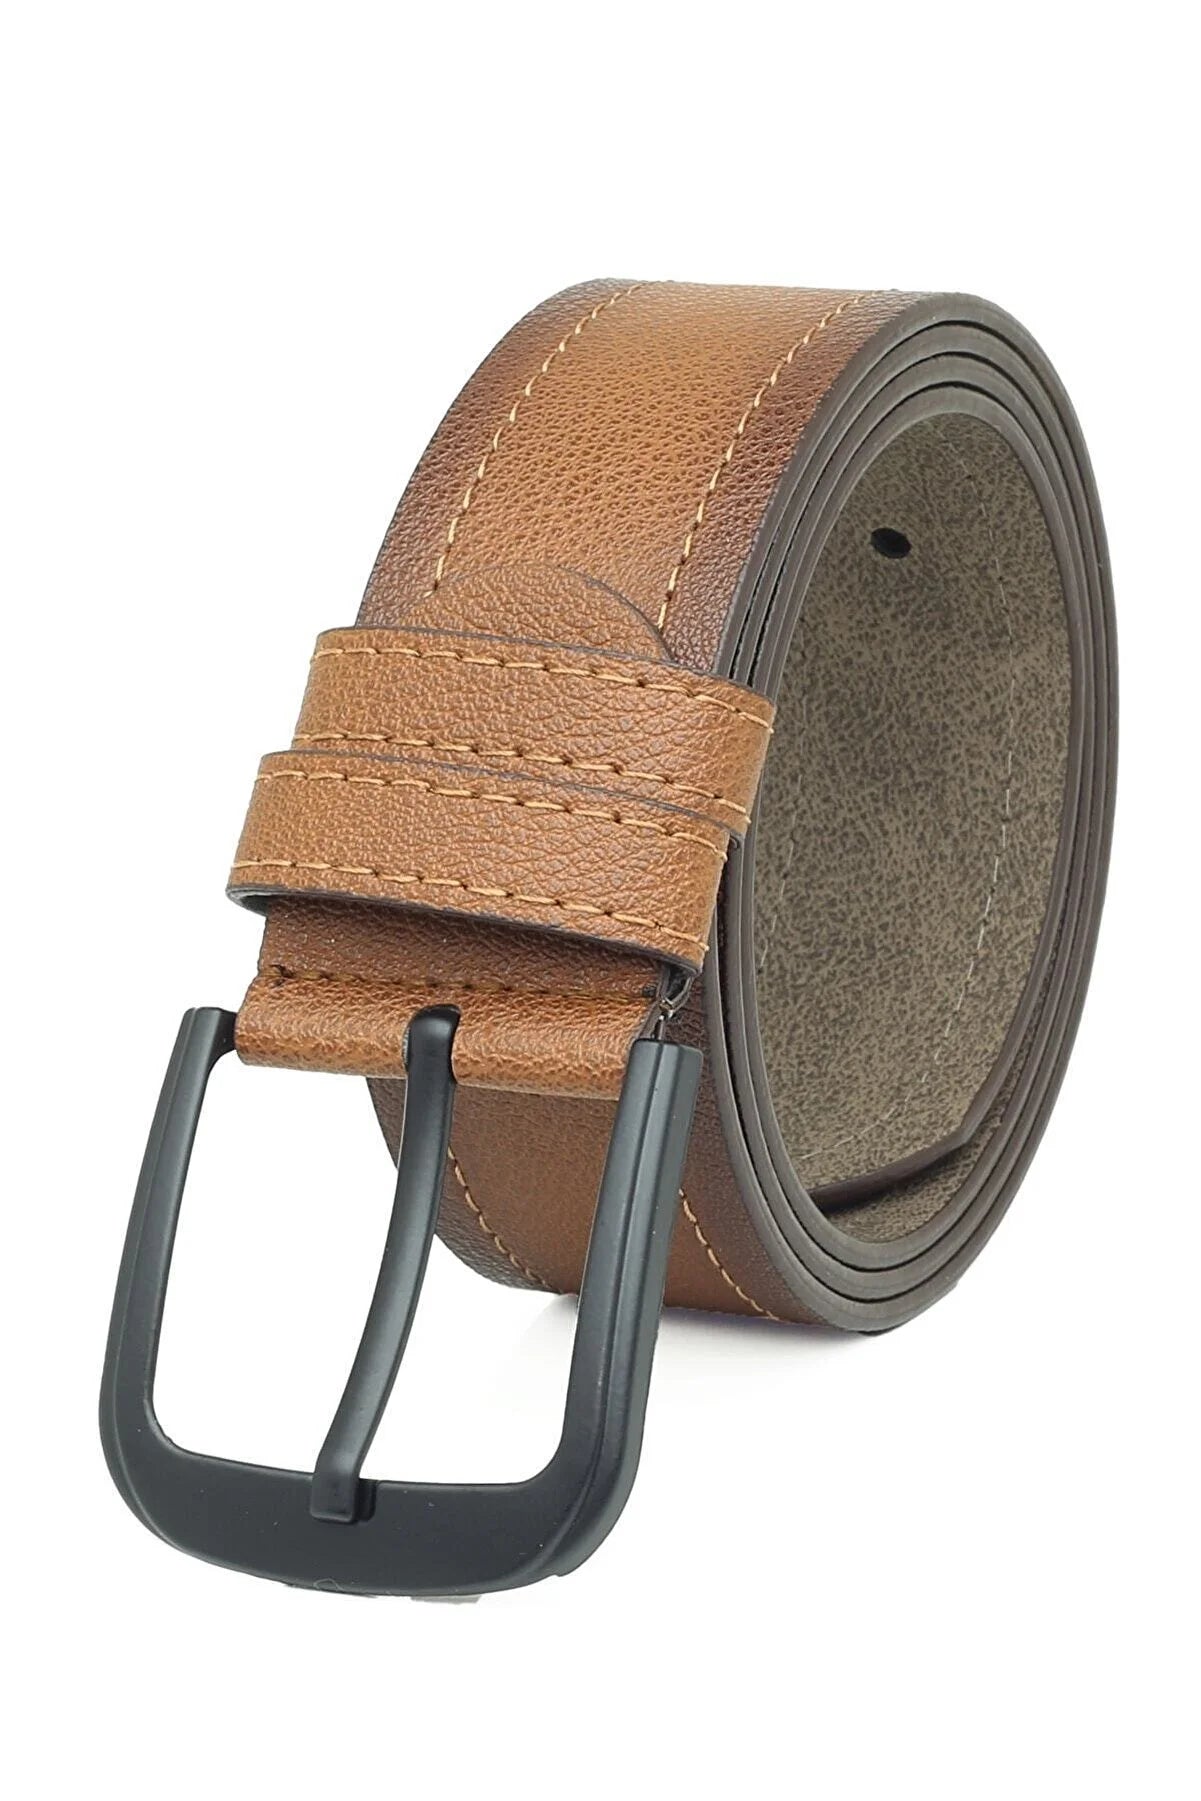 3 Pieces Men's Belt Set Suitable for Denim and Canvas - Classic Black Faux Leather